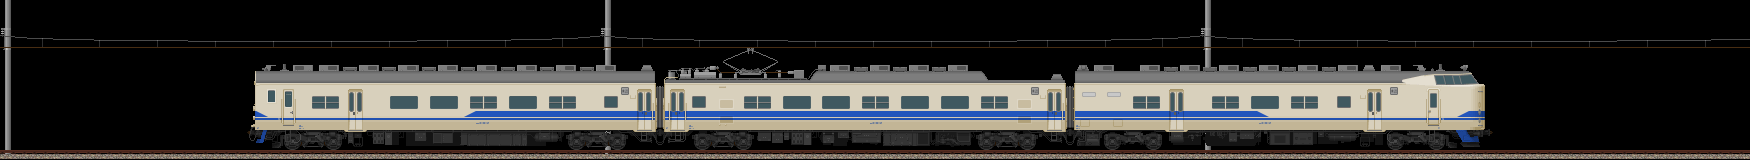 419系近郊形電車(新北陸色)